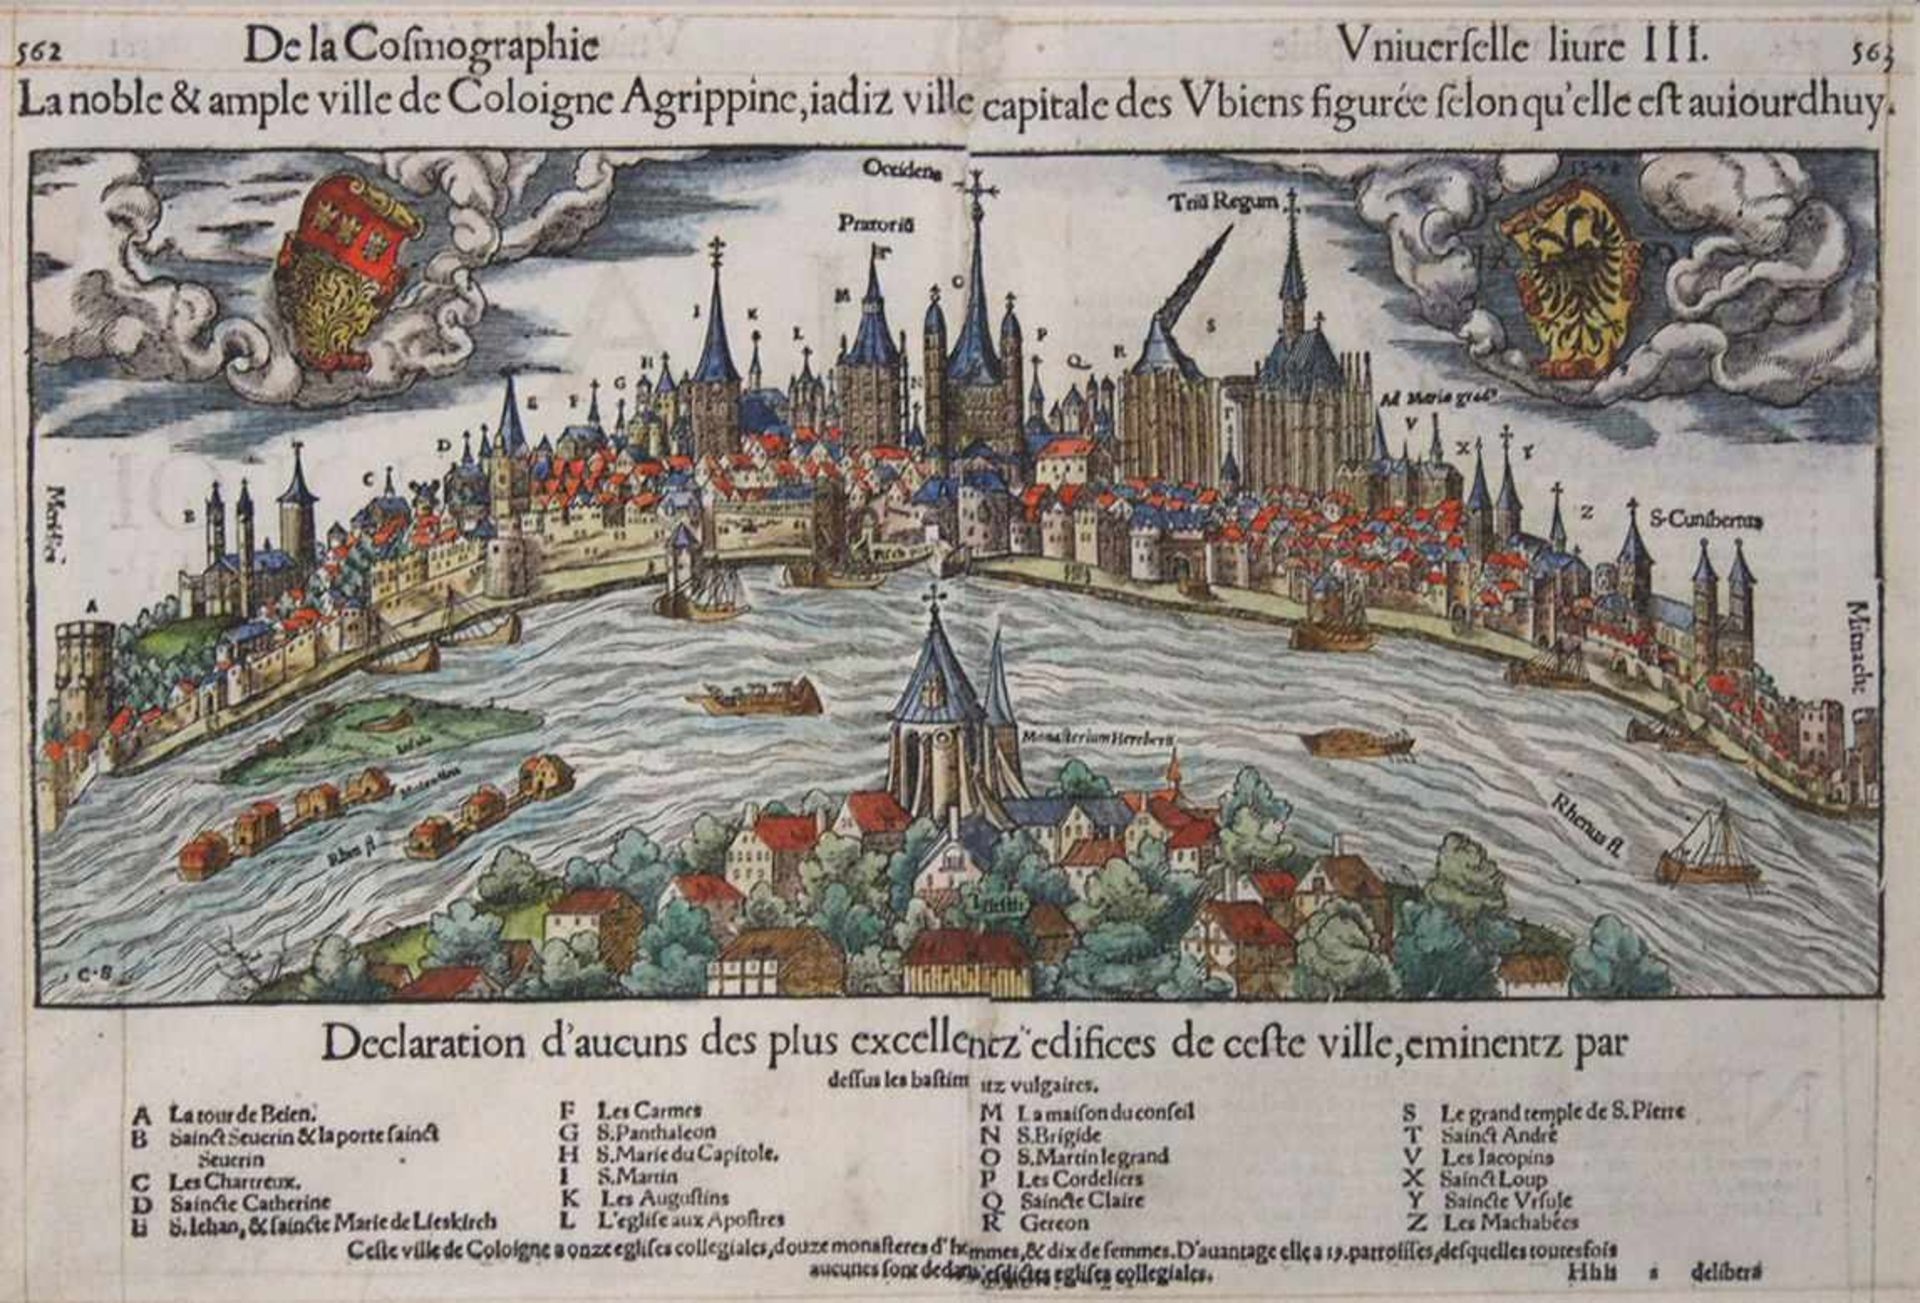 MÜNSTER, Sebastian1488-1552La noble et ample ville de Coloigne AgrippineHolzschnitt, altkoloriert,